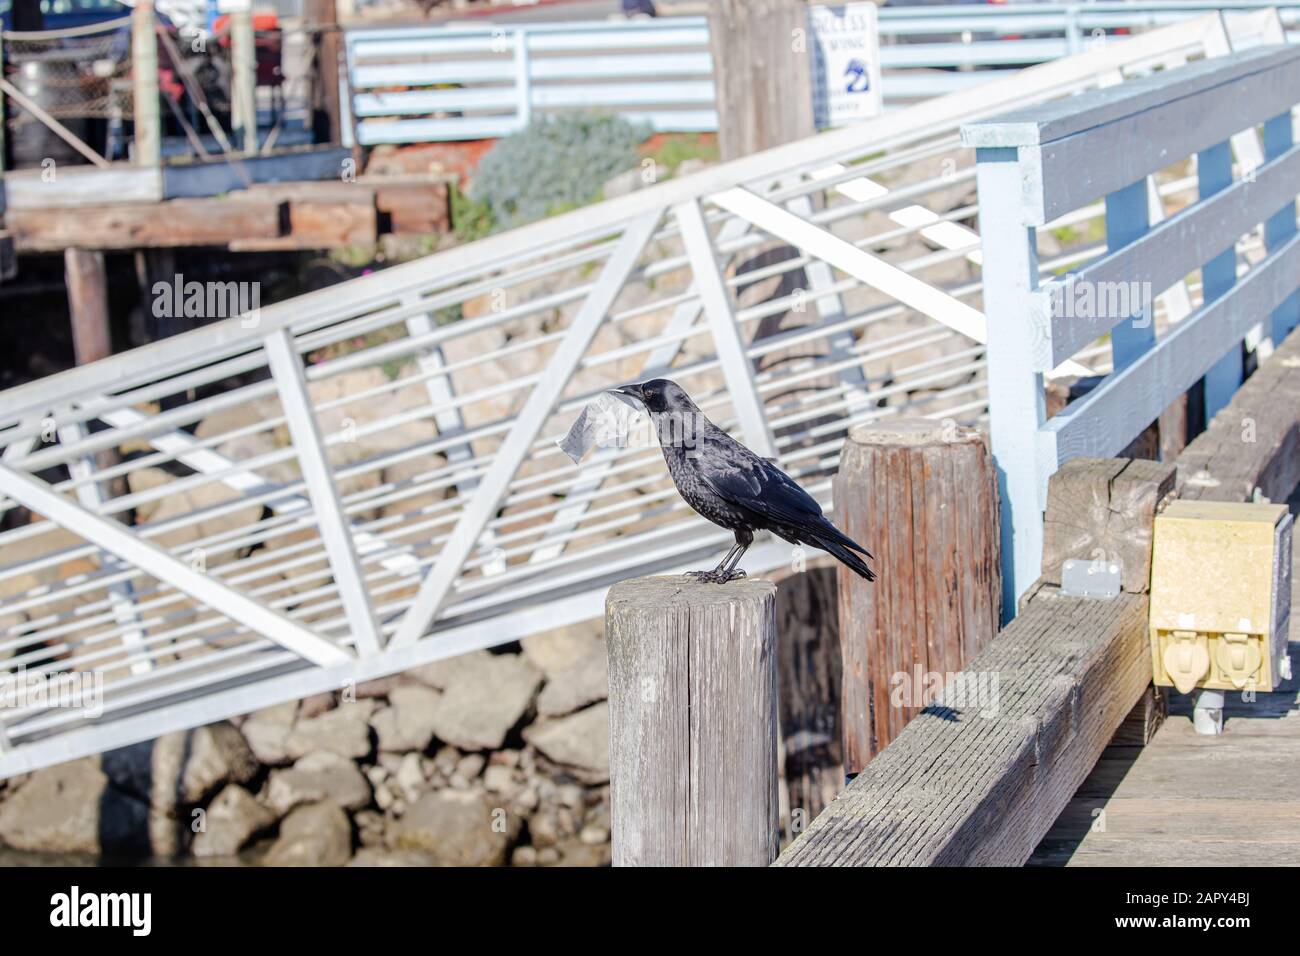 Corbeau noir avec facture de restaurant dans son bec à Morro Bay, CA Banque D'Images